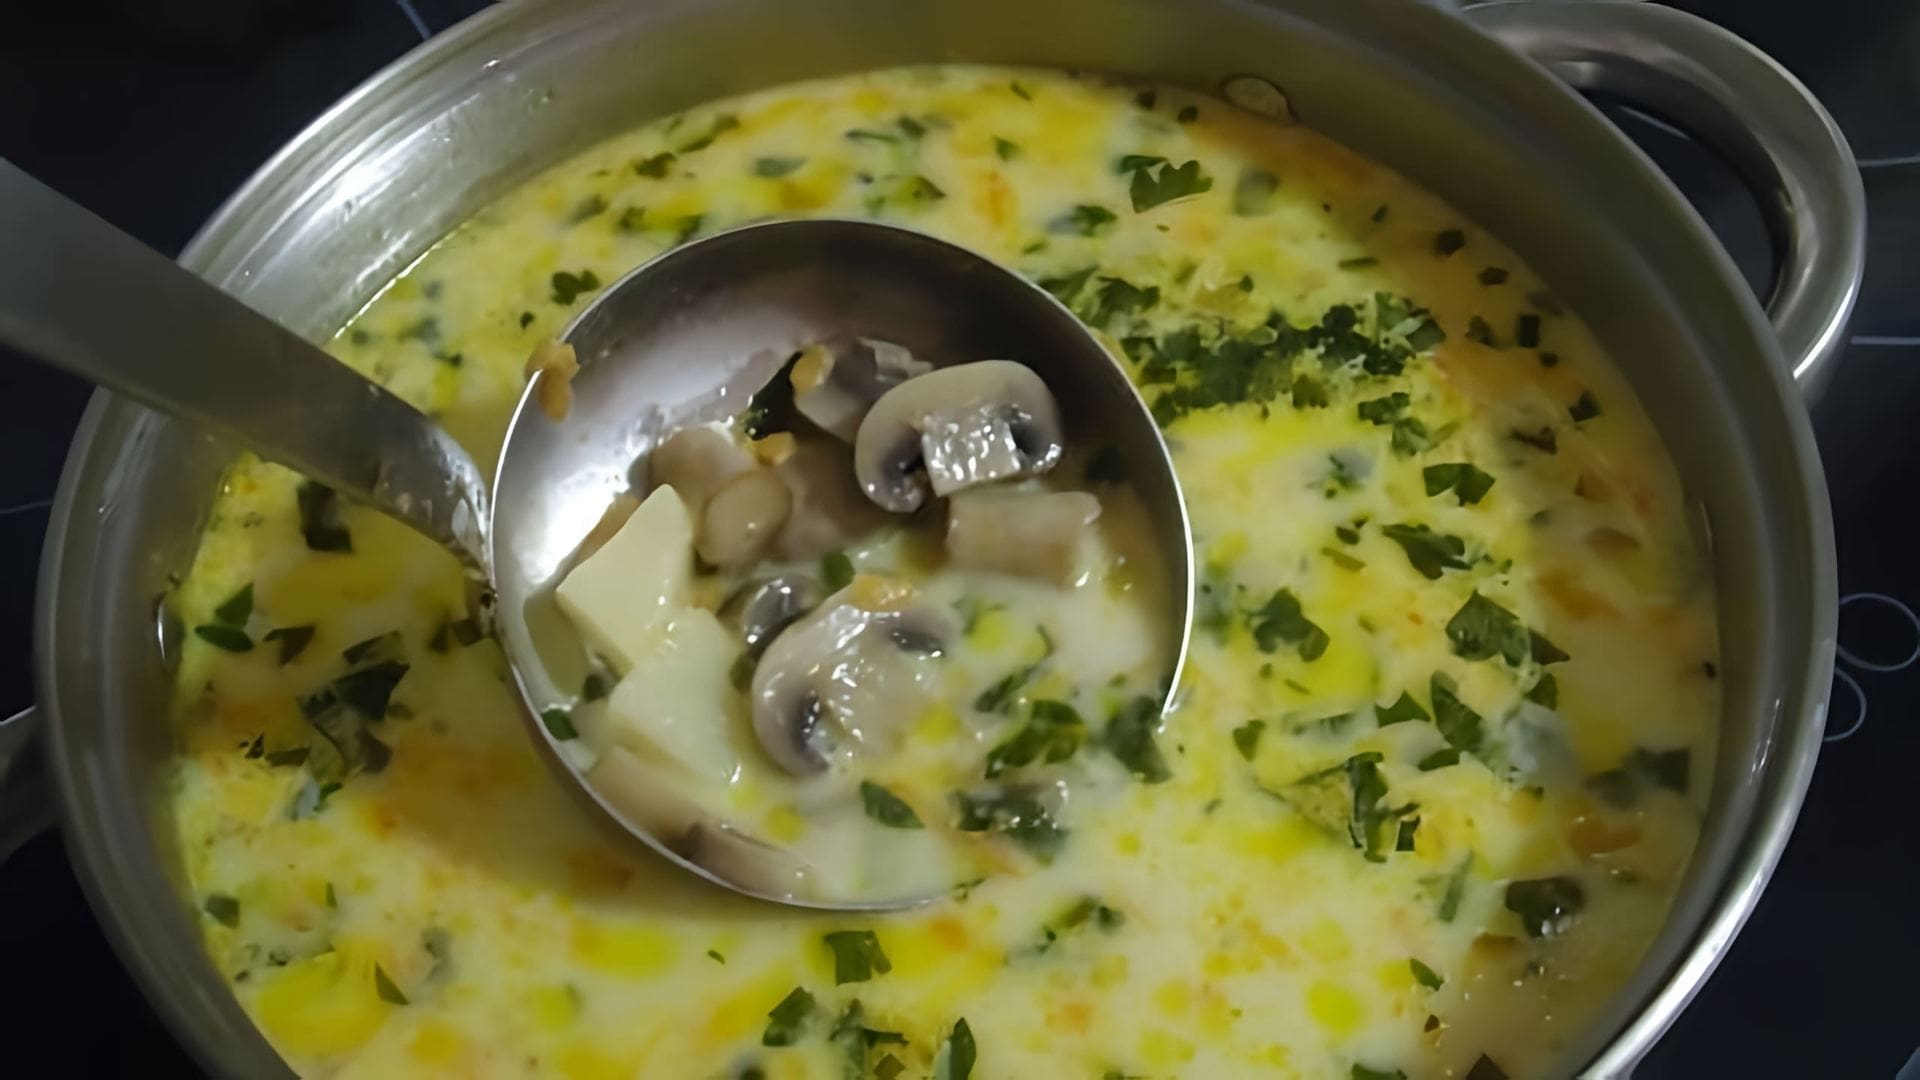 Подробный рецепт приготовления сырного супа с плавленным сырком и курицей. Это очень вкусно!!! leoanta/